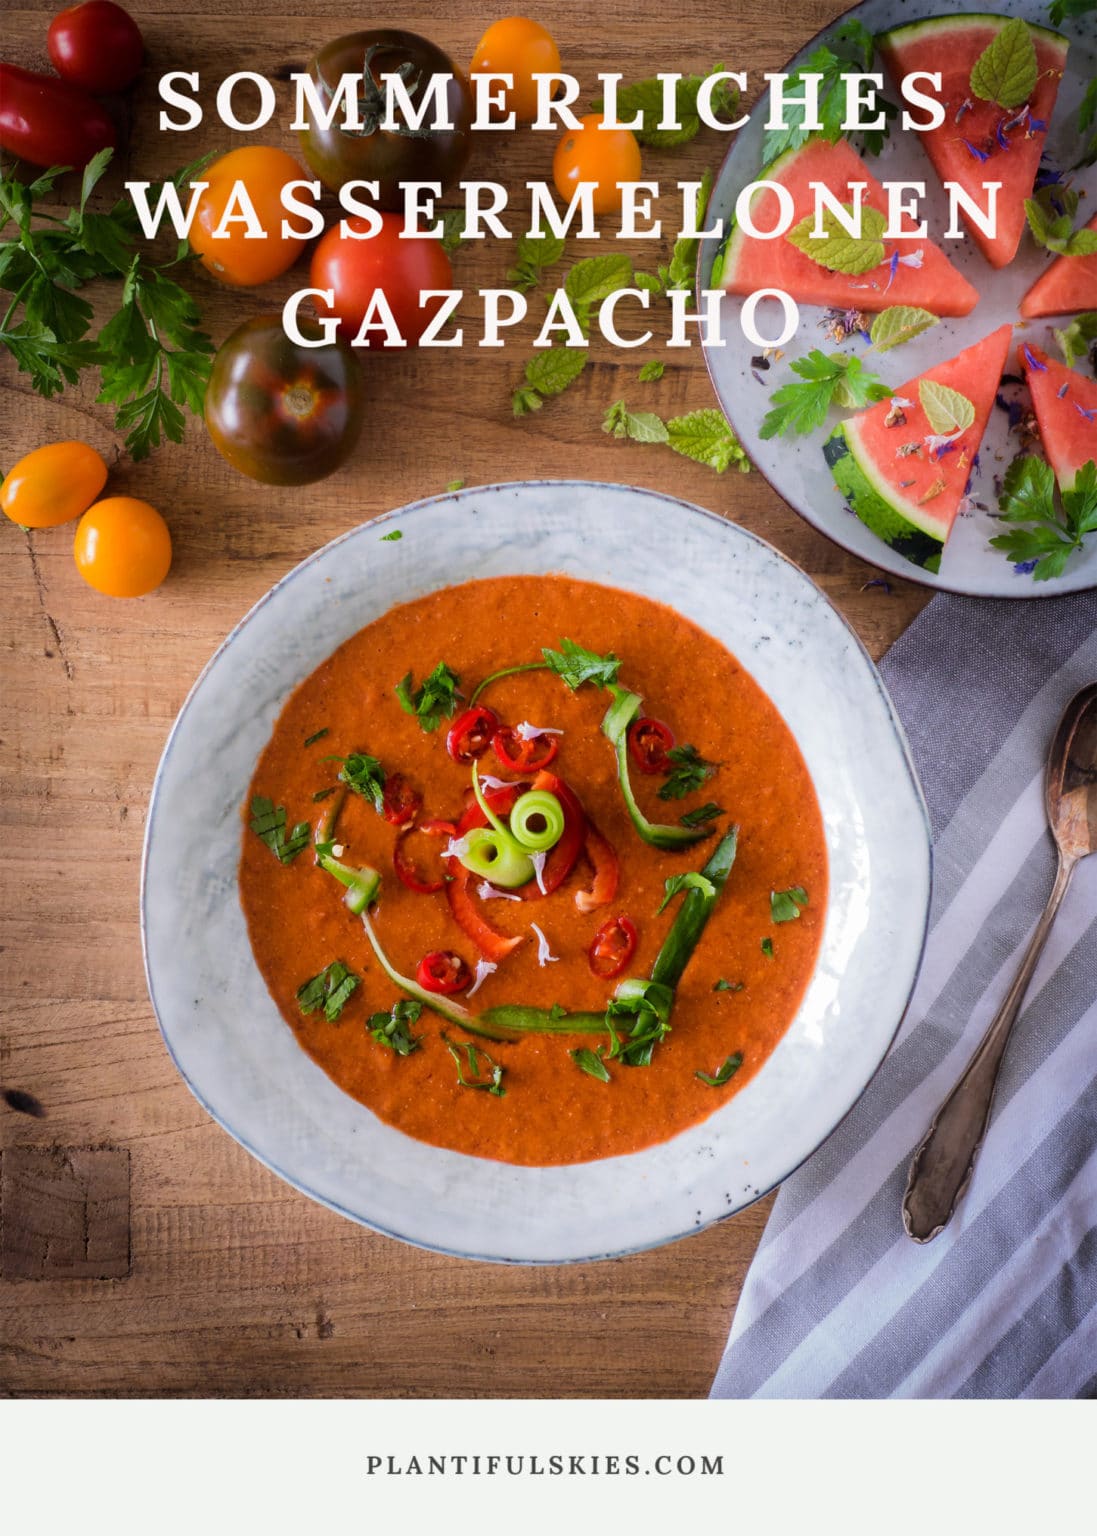 Wassermelonen Gazpacho mit Chia Samen, so schmeckt der Sommer!